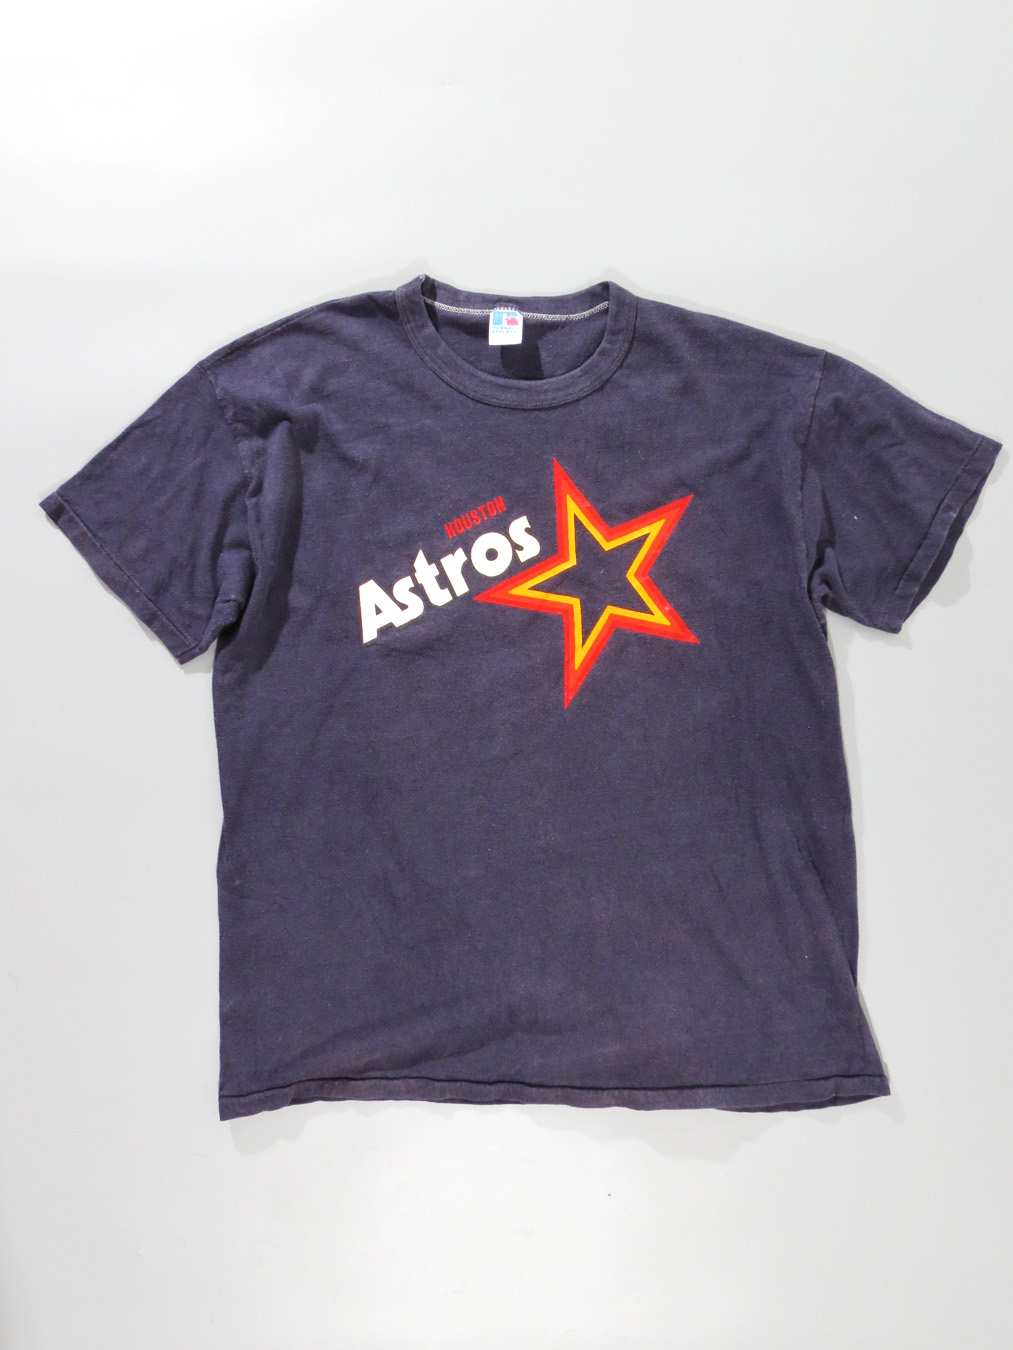 houston astros vintage shirt